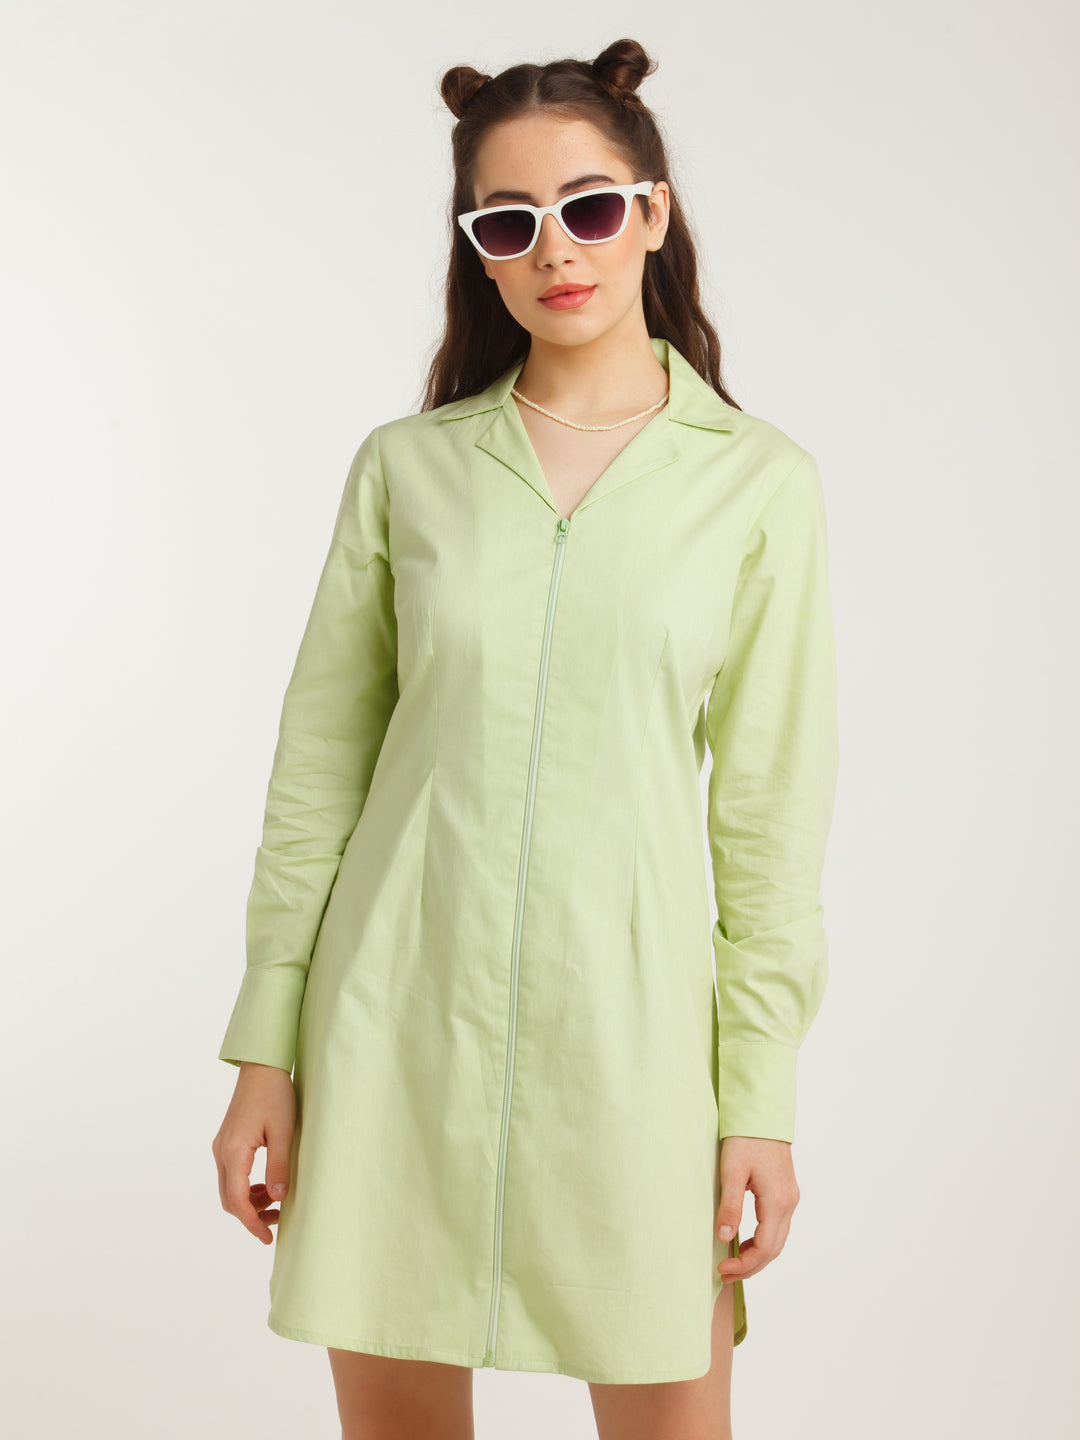 Green Solid Shirt Dress For Women